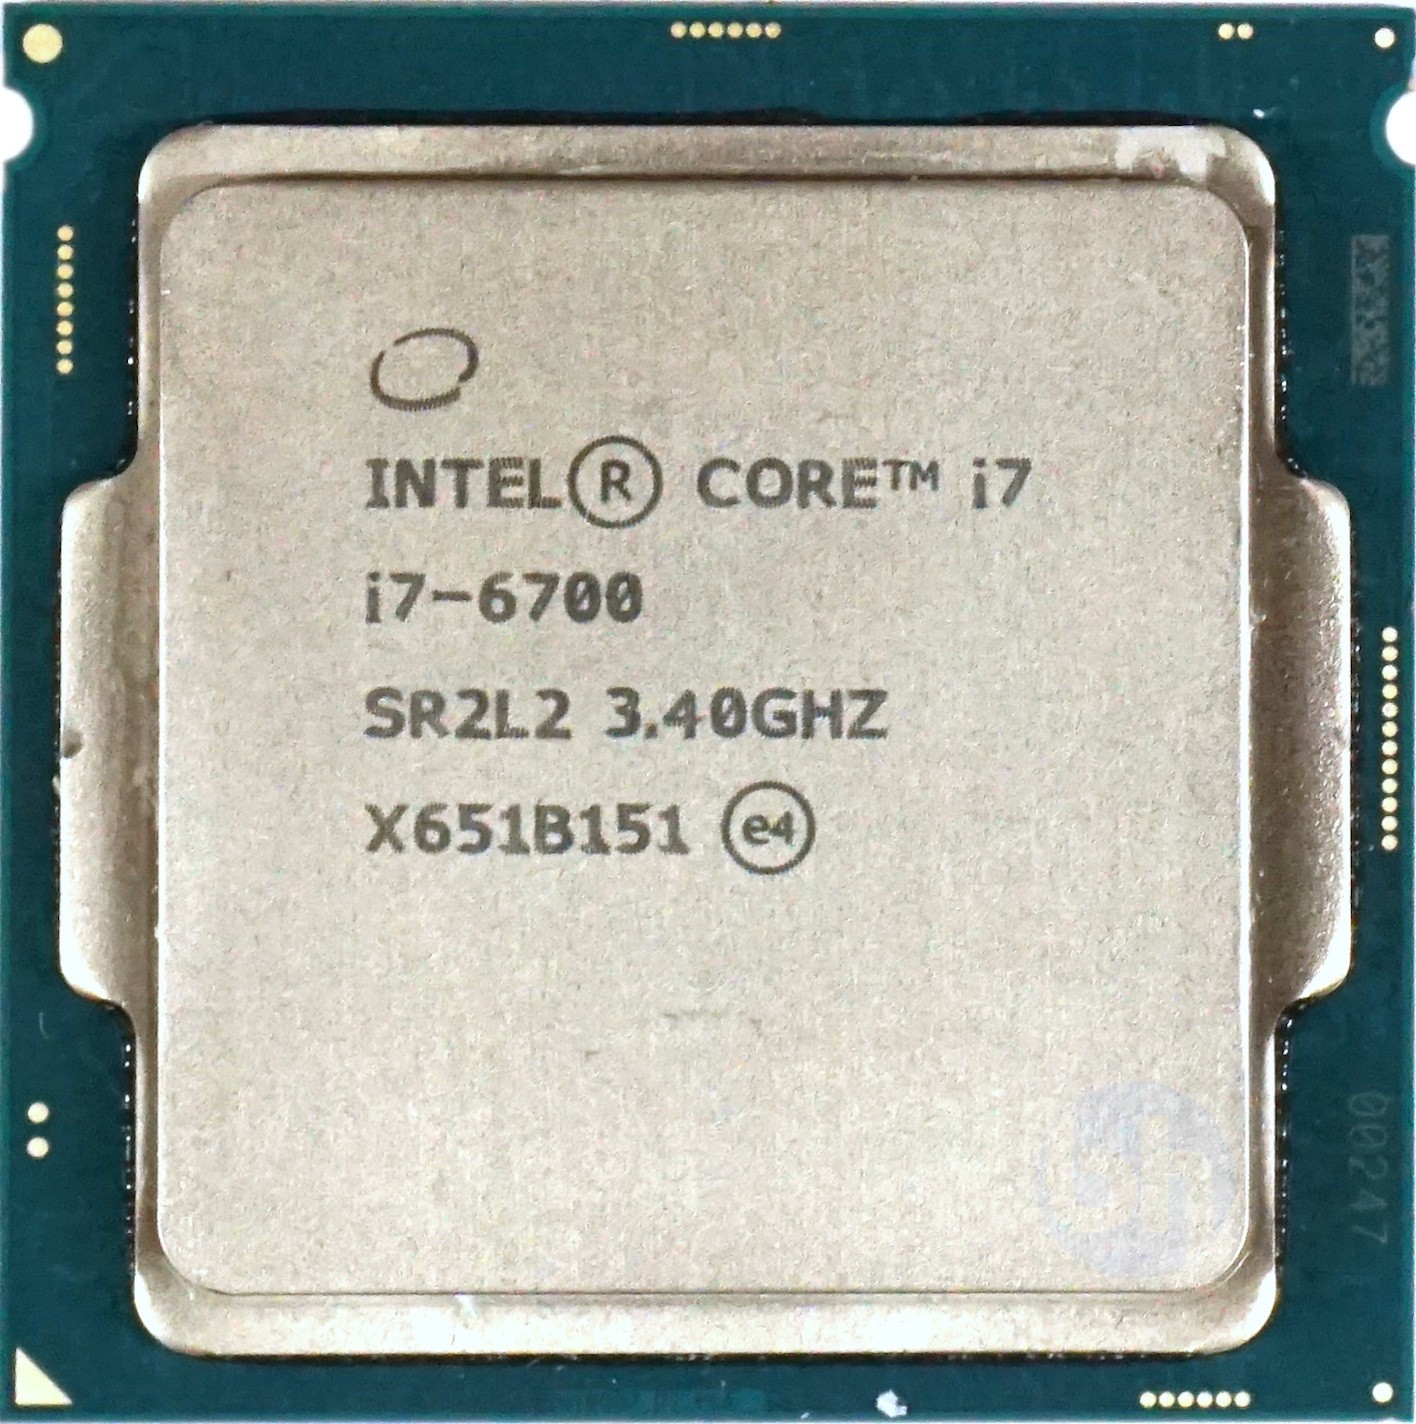 Intel CPU Core i7-6700 3.40GHz - パーツ